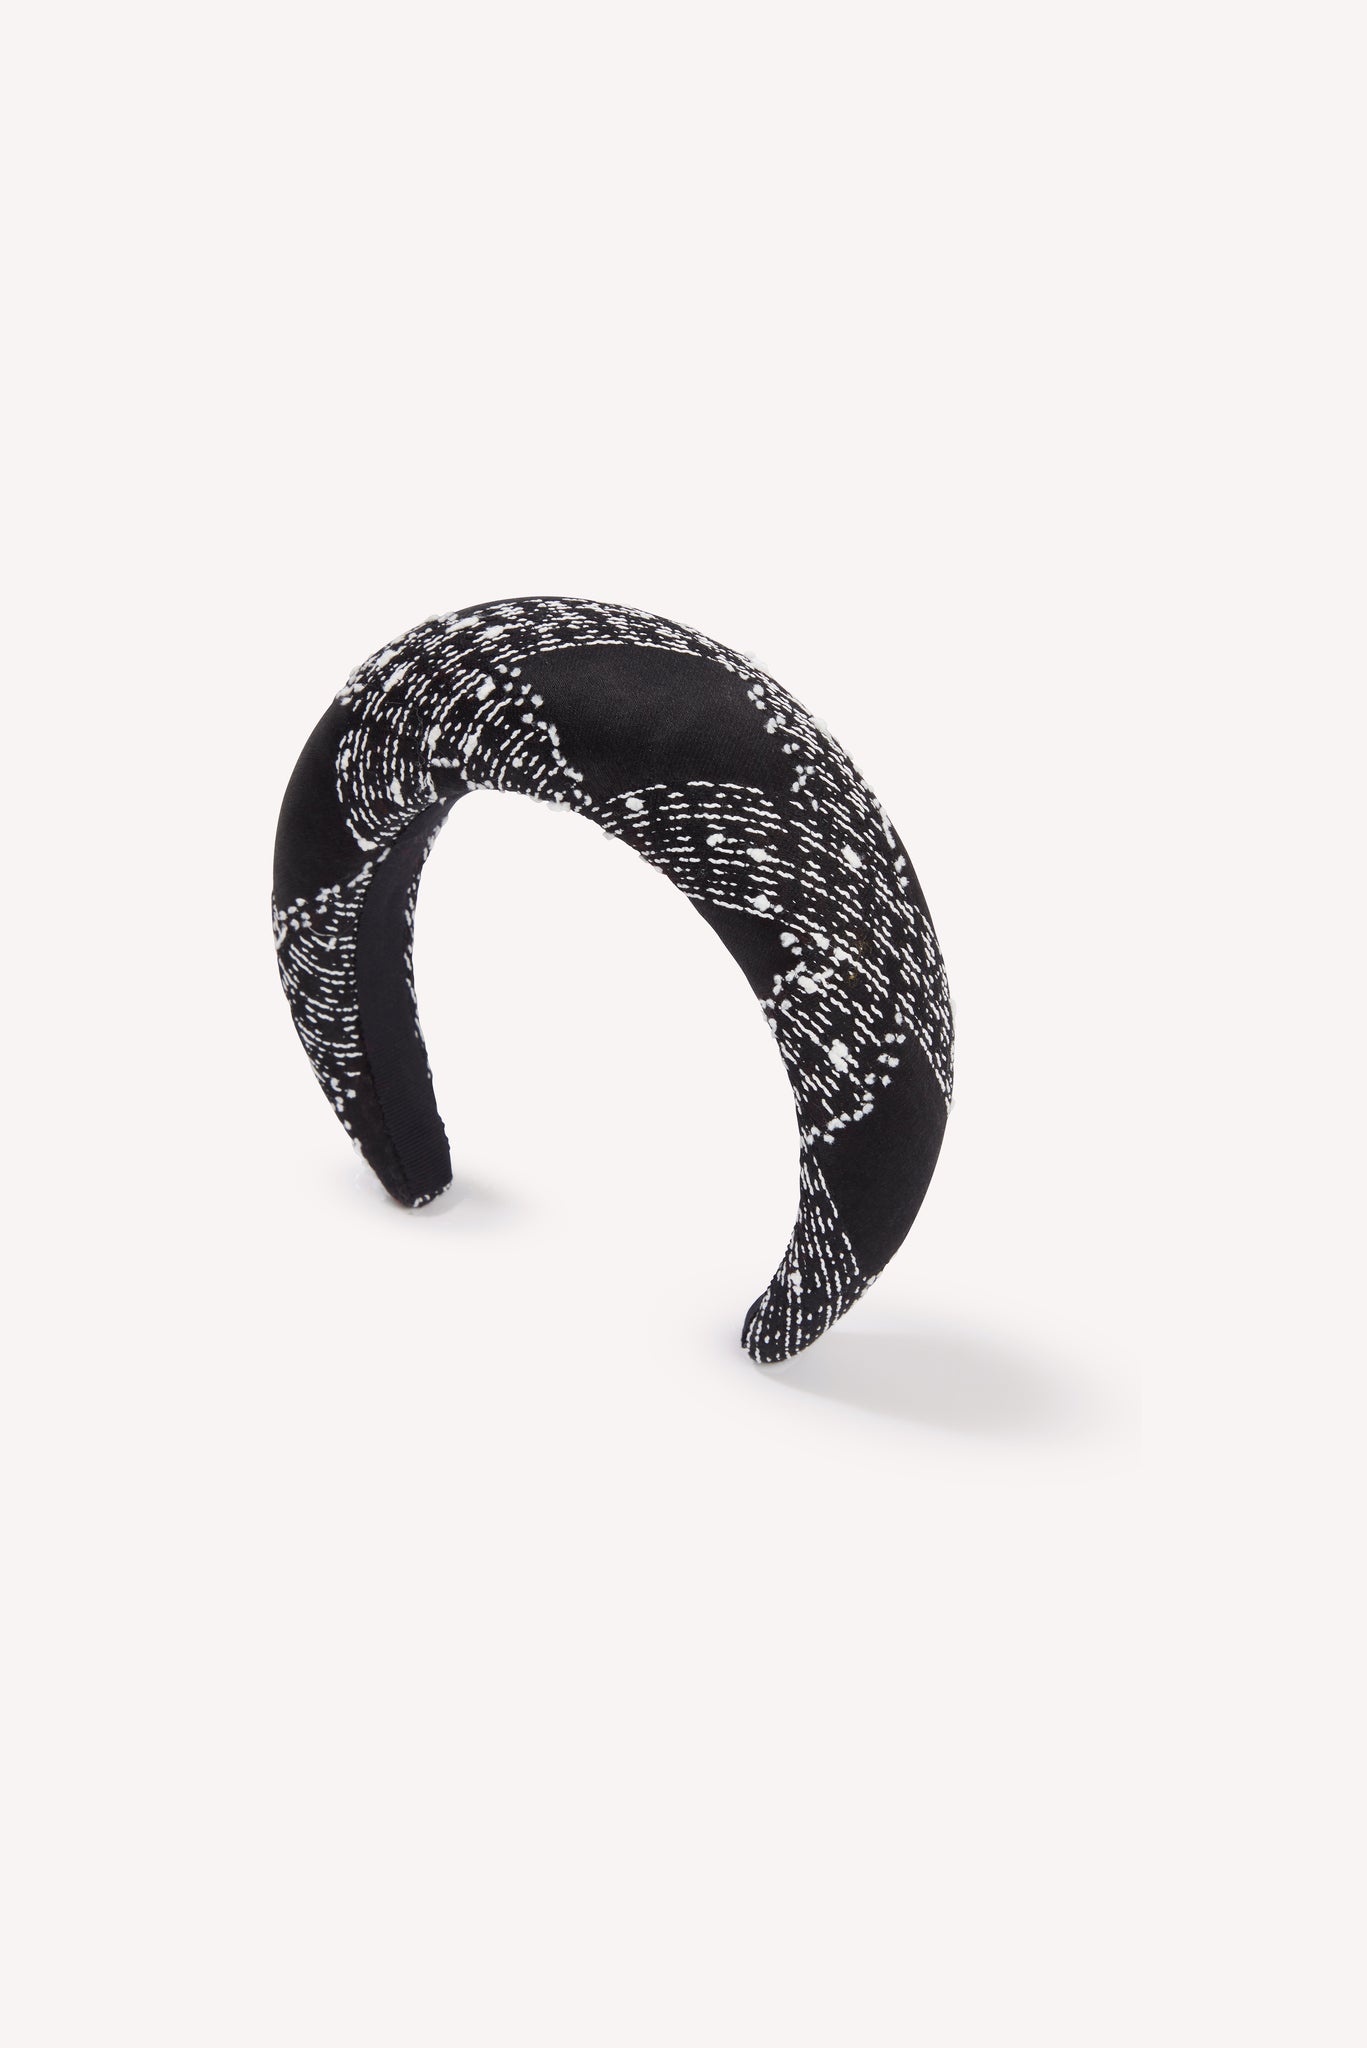 Charlotte Headband in Black Faded Check Headband